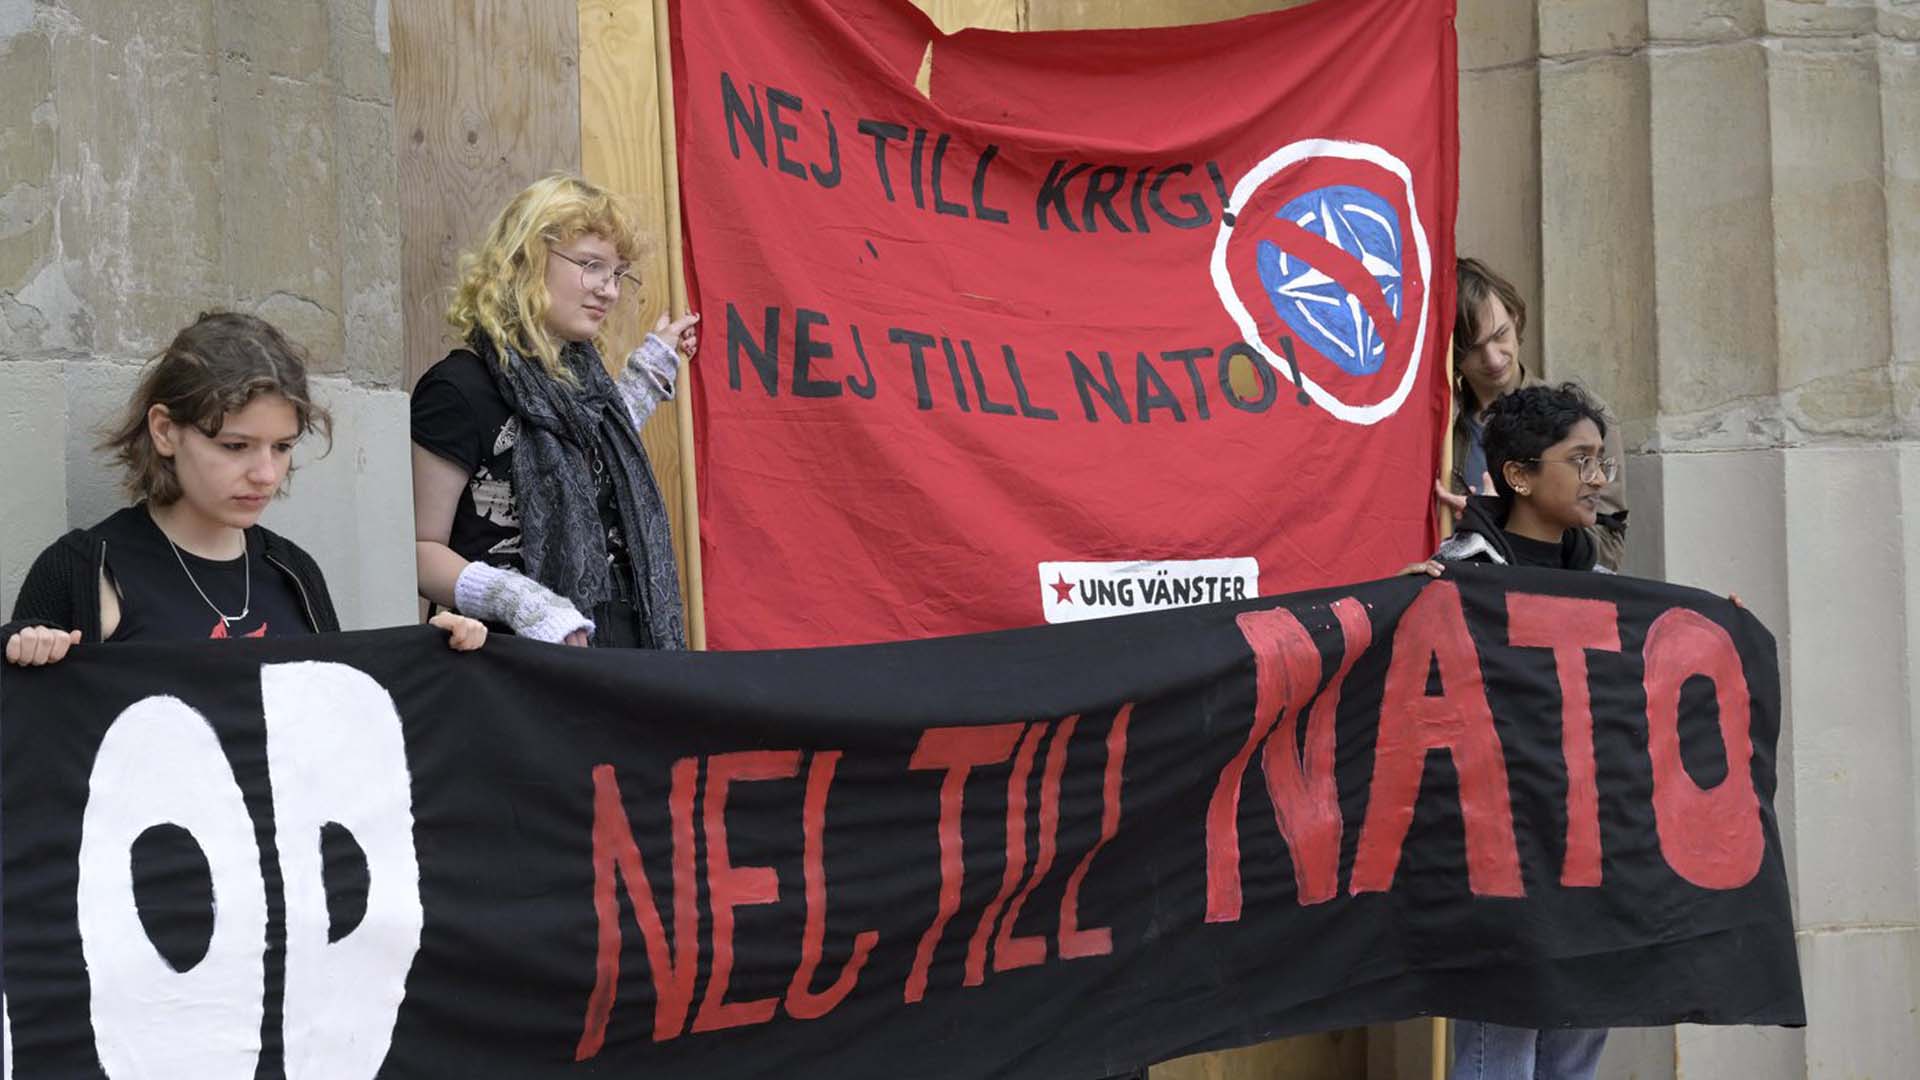 Des manifestants suédois demandent à leur gouvernement de ne pas rejoindre les rangs de l'OTAN.